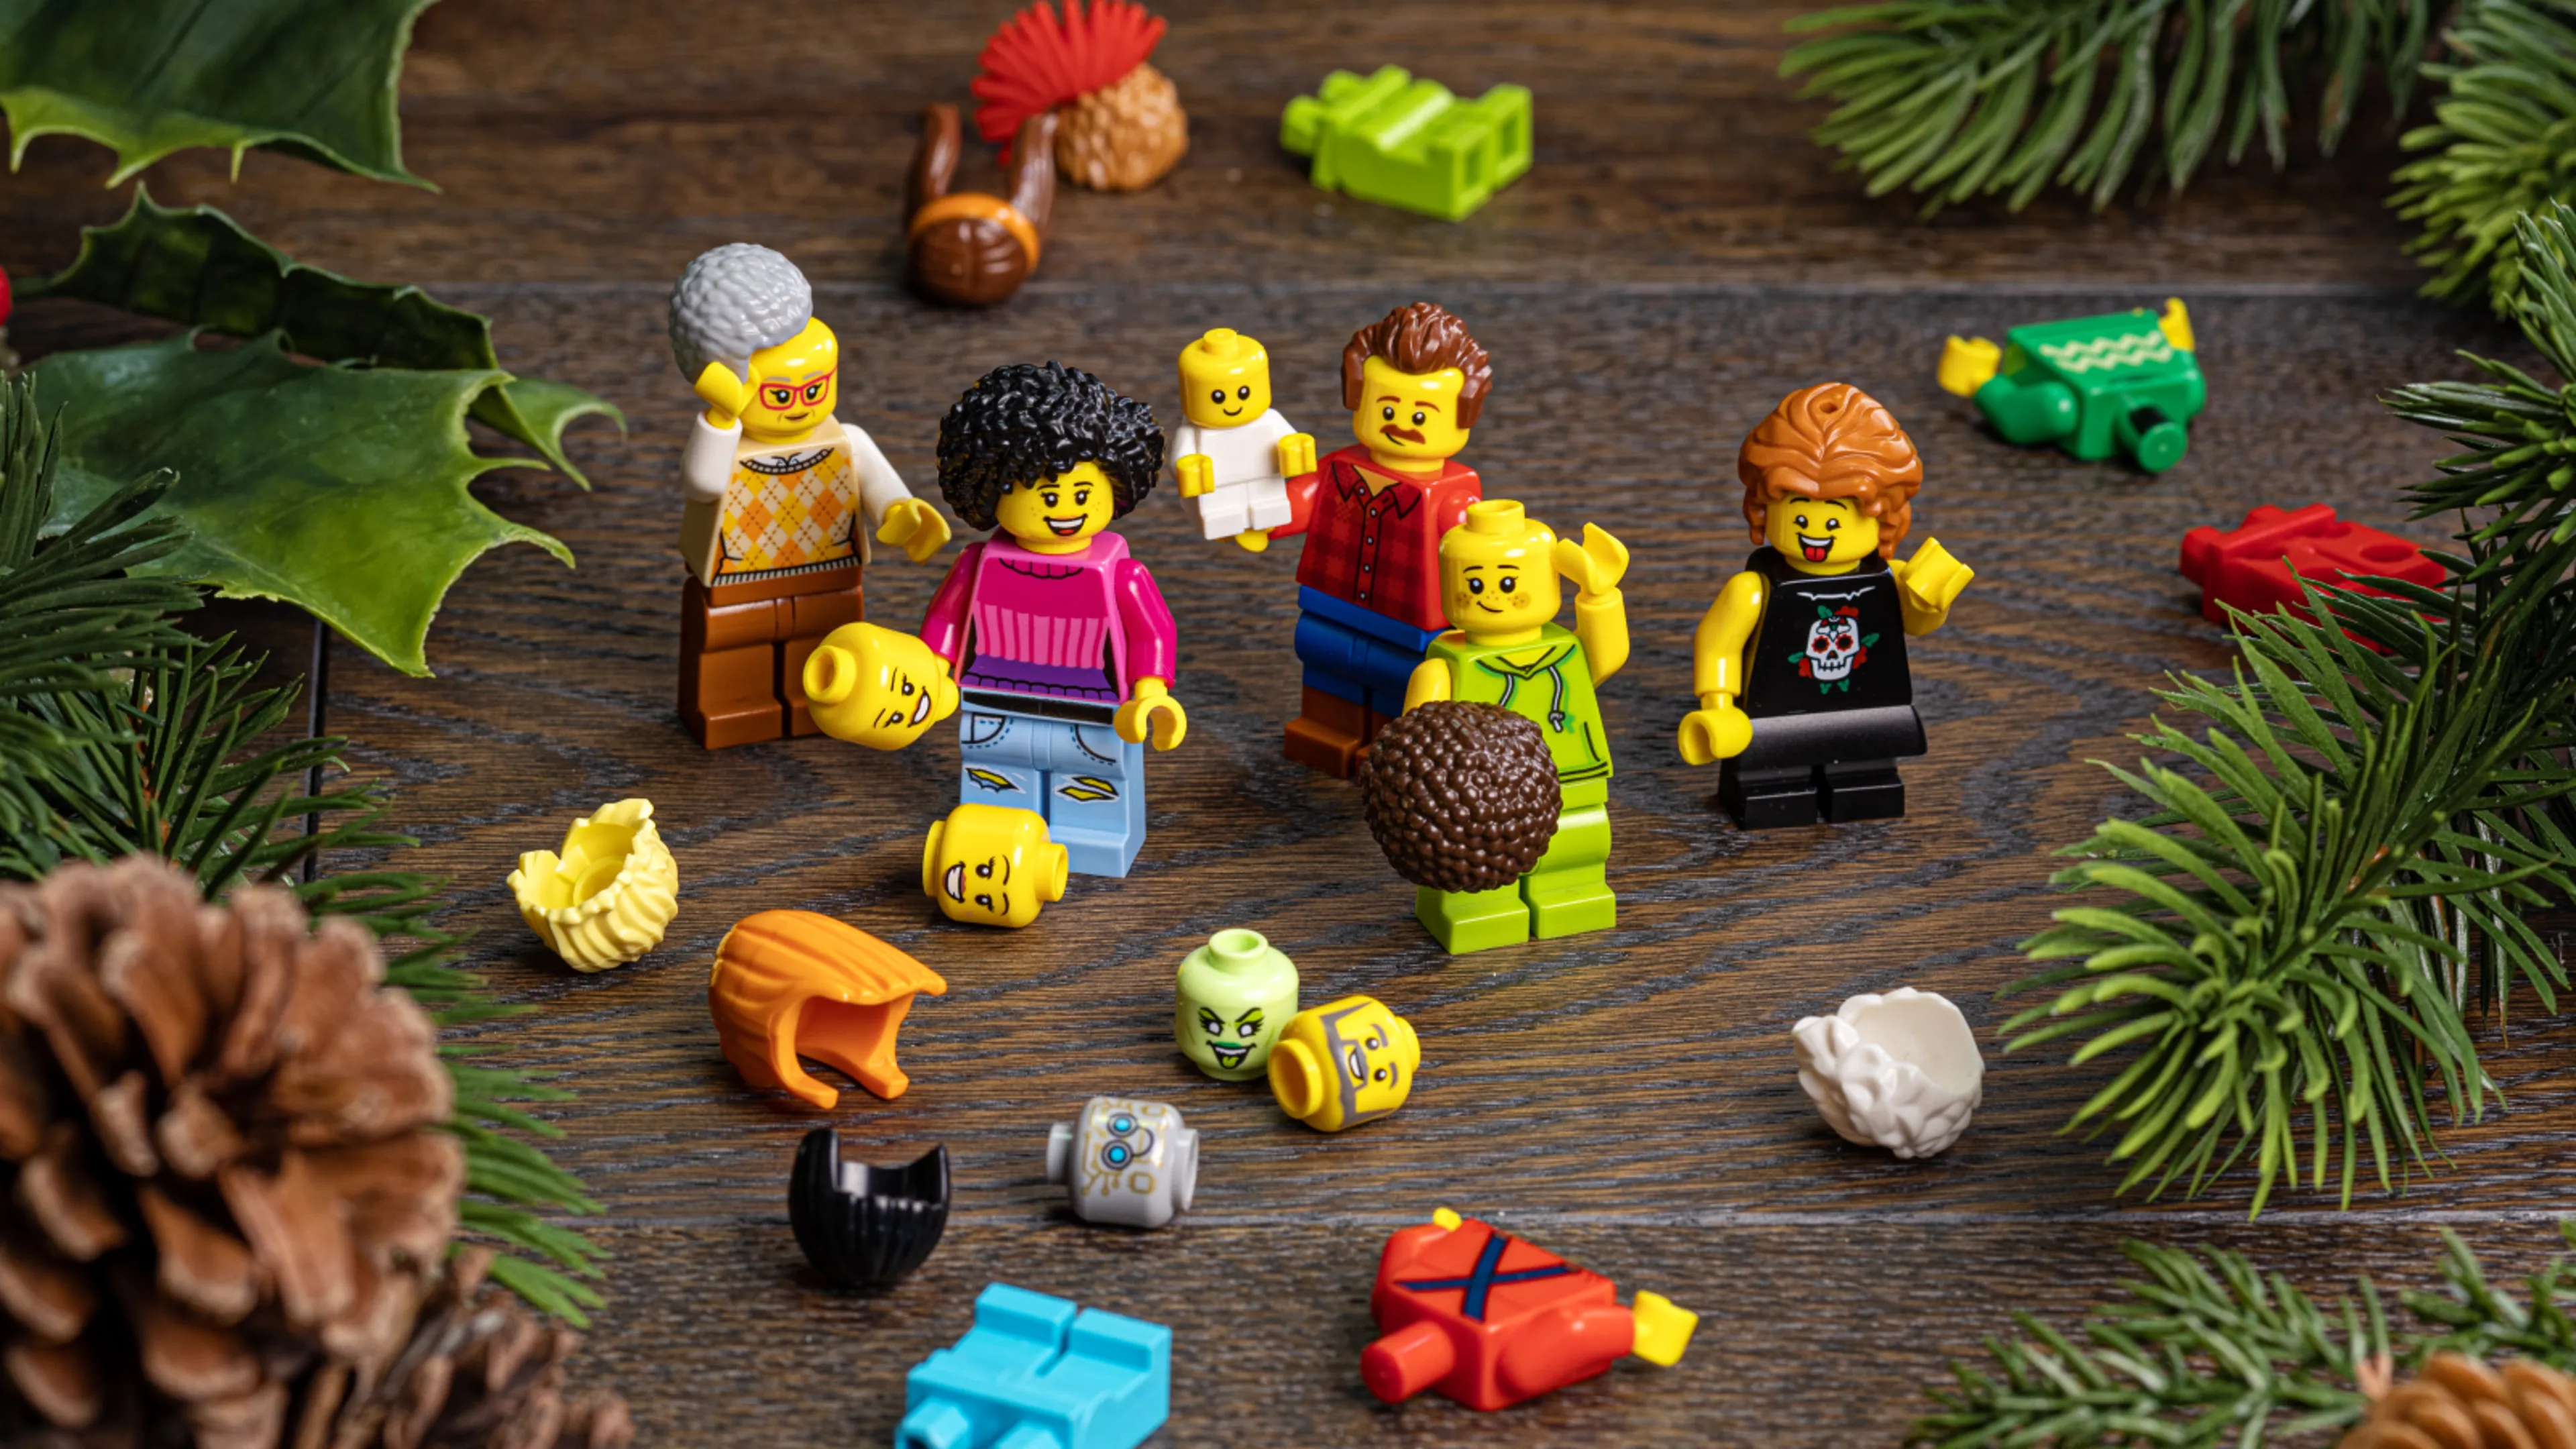  LEGO minifigures on a table